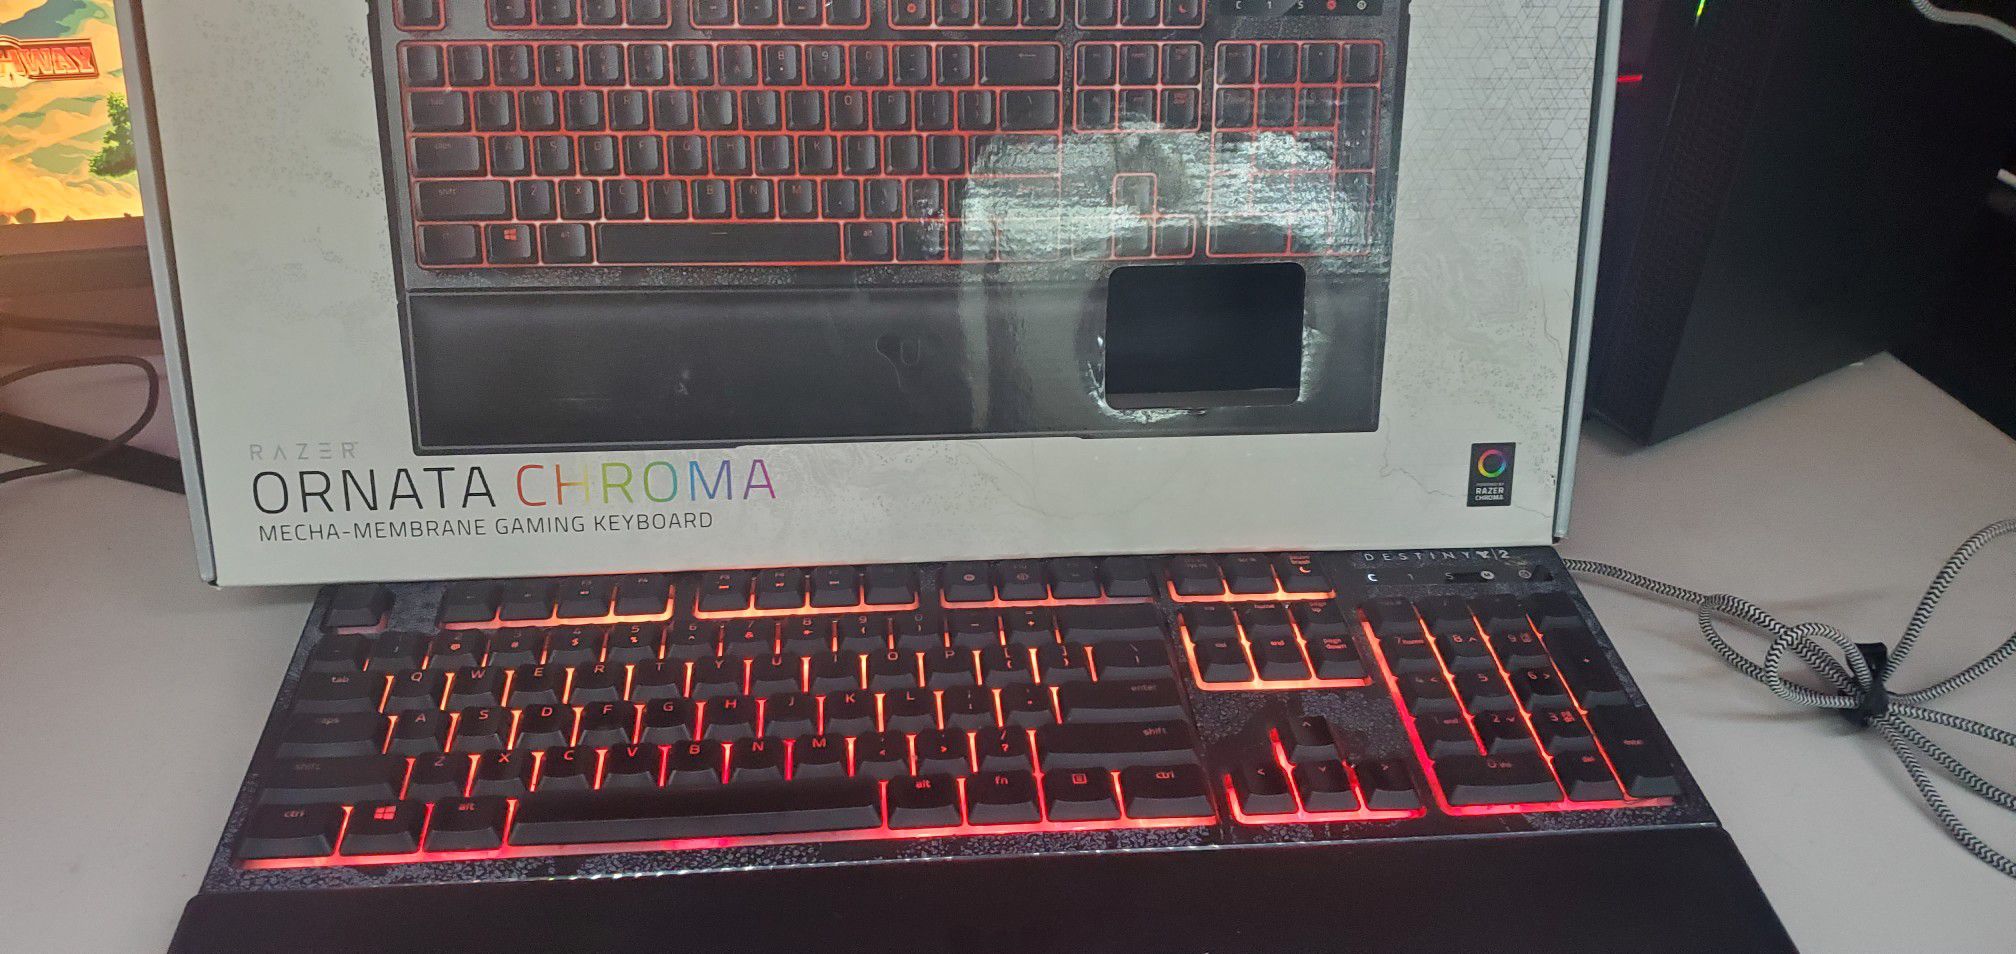 Razer ornata chroma destiny 2 edition gaming keyboard